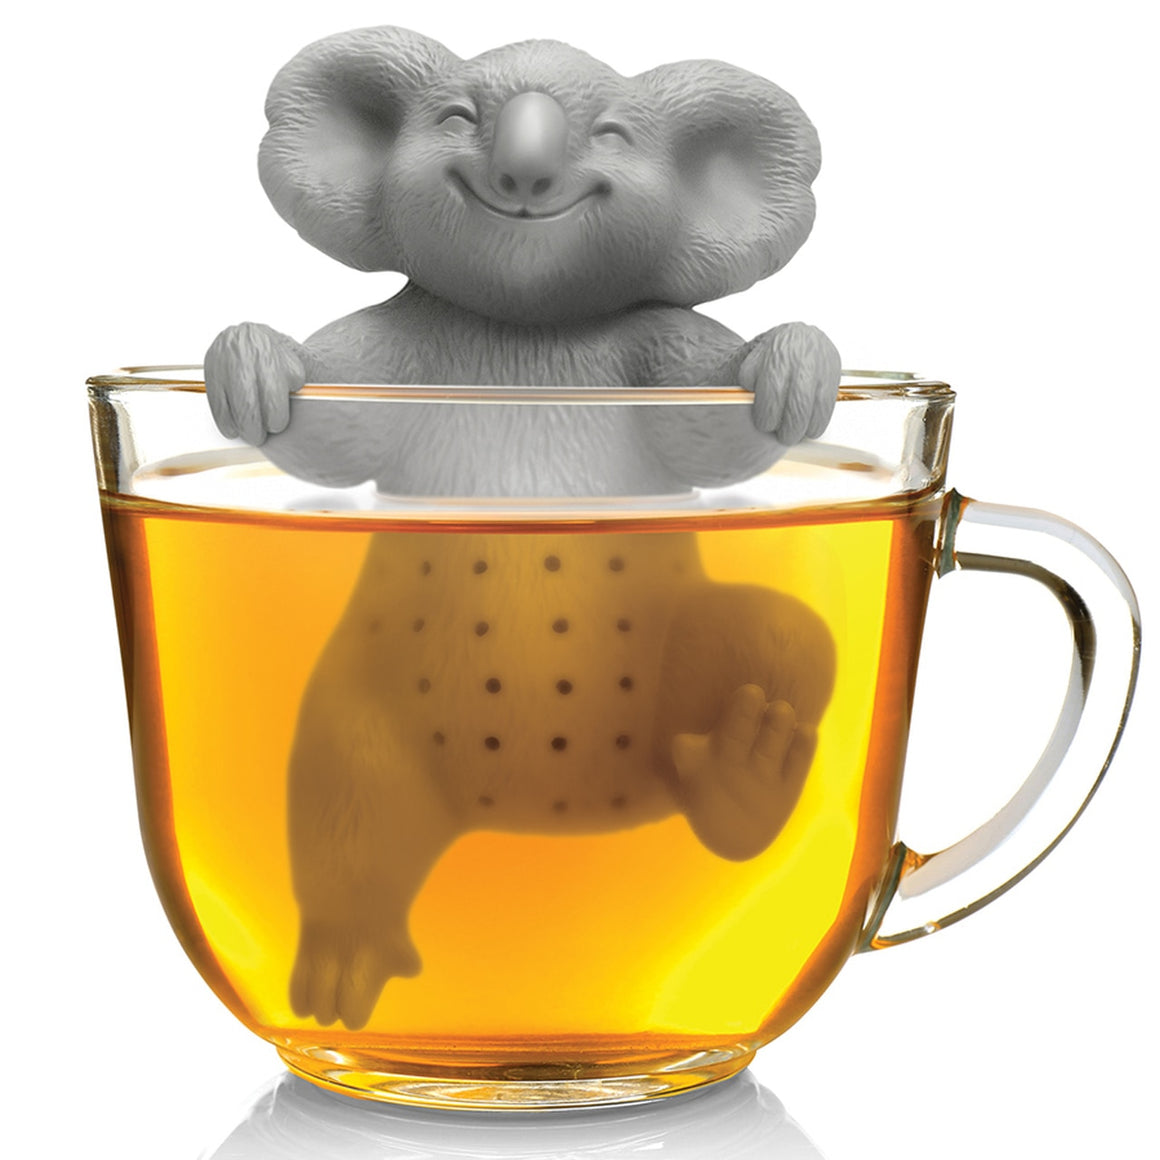 Koala-Tea Infuser